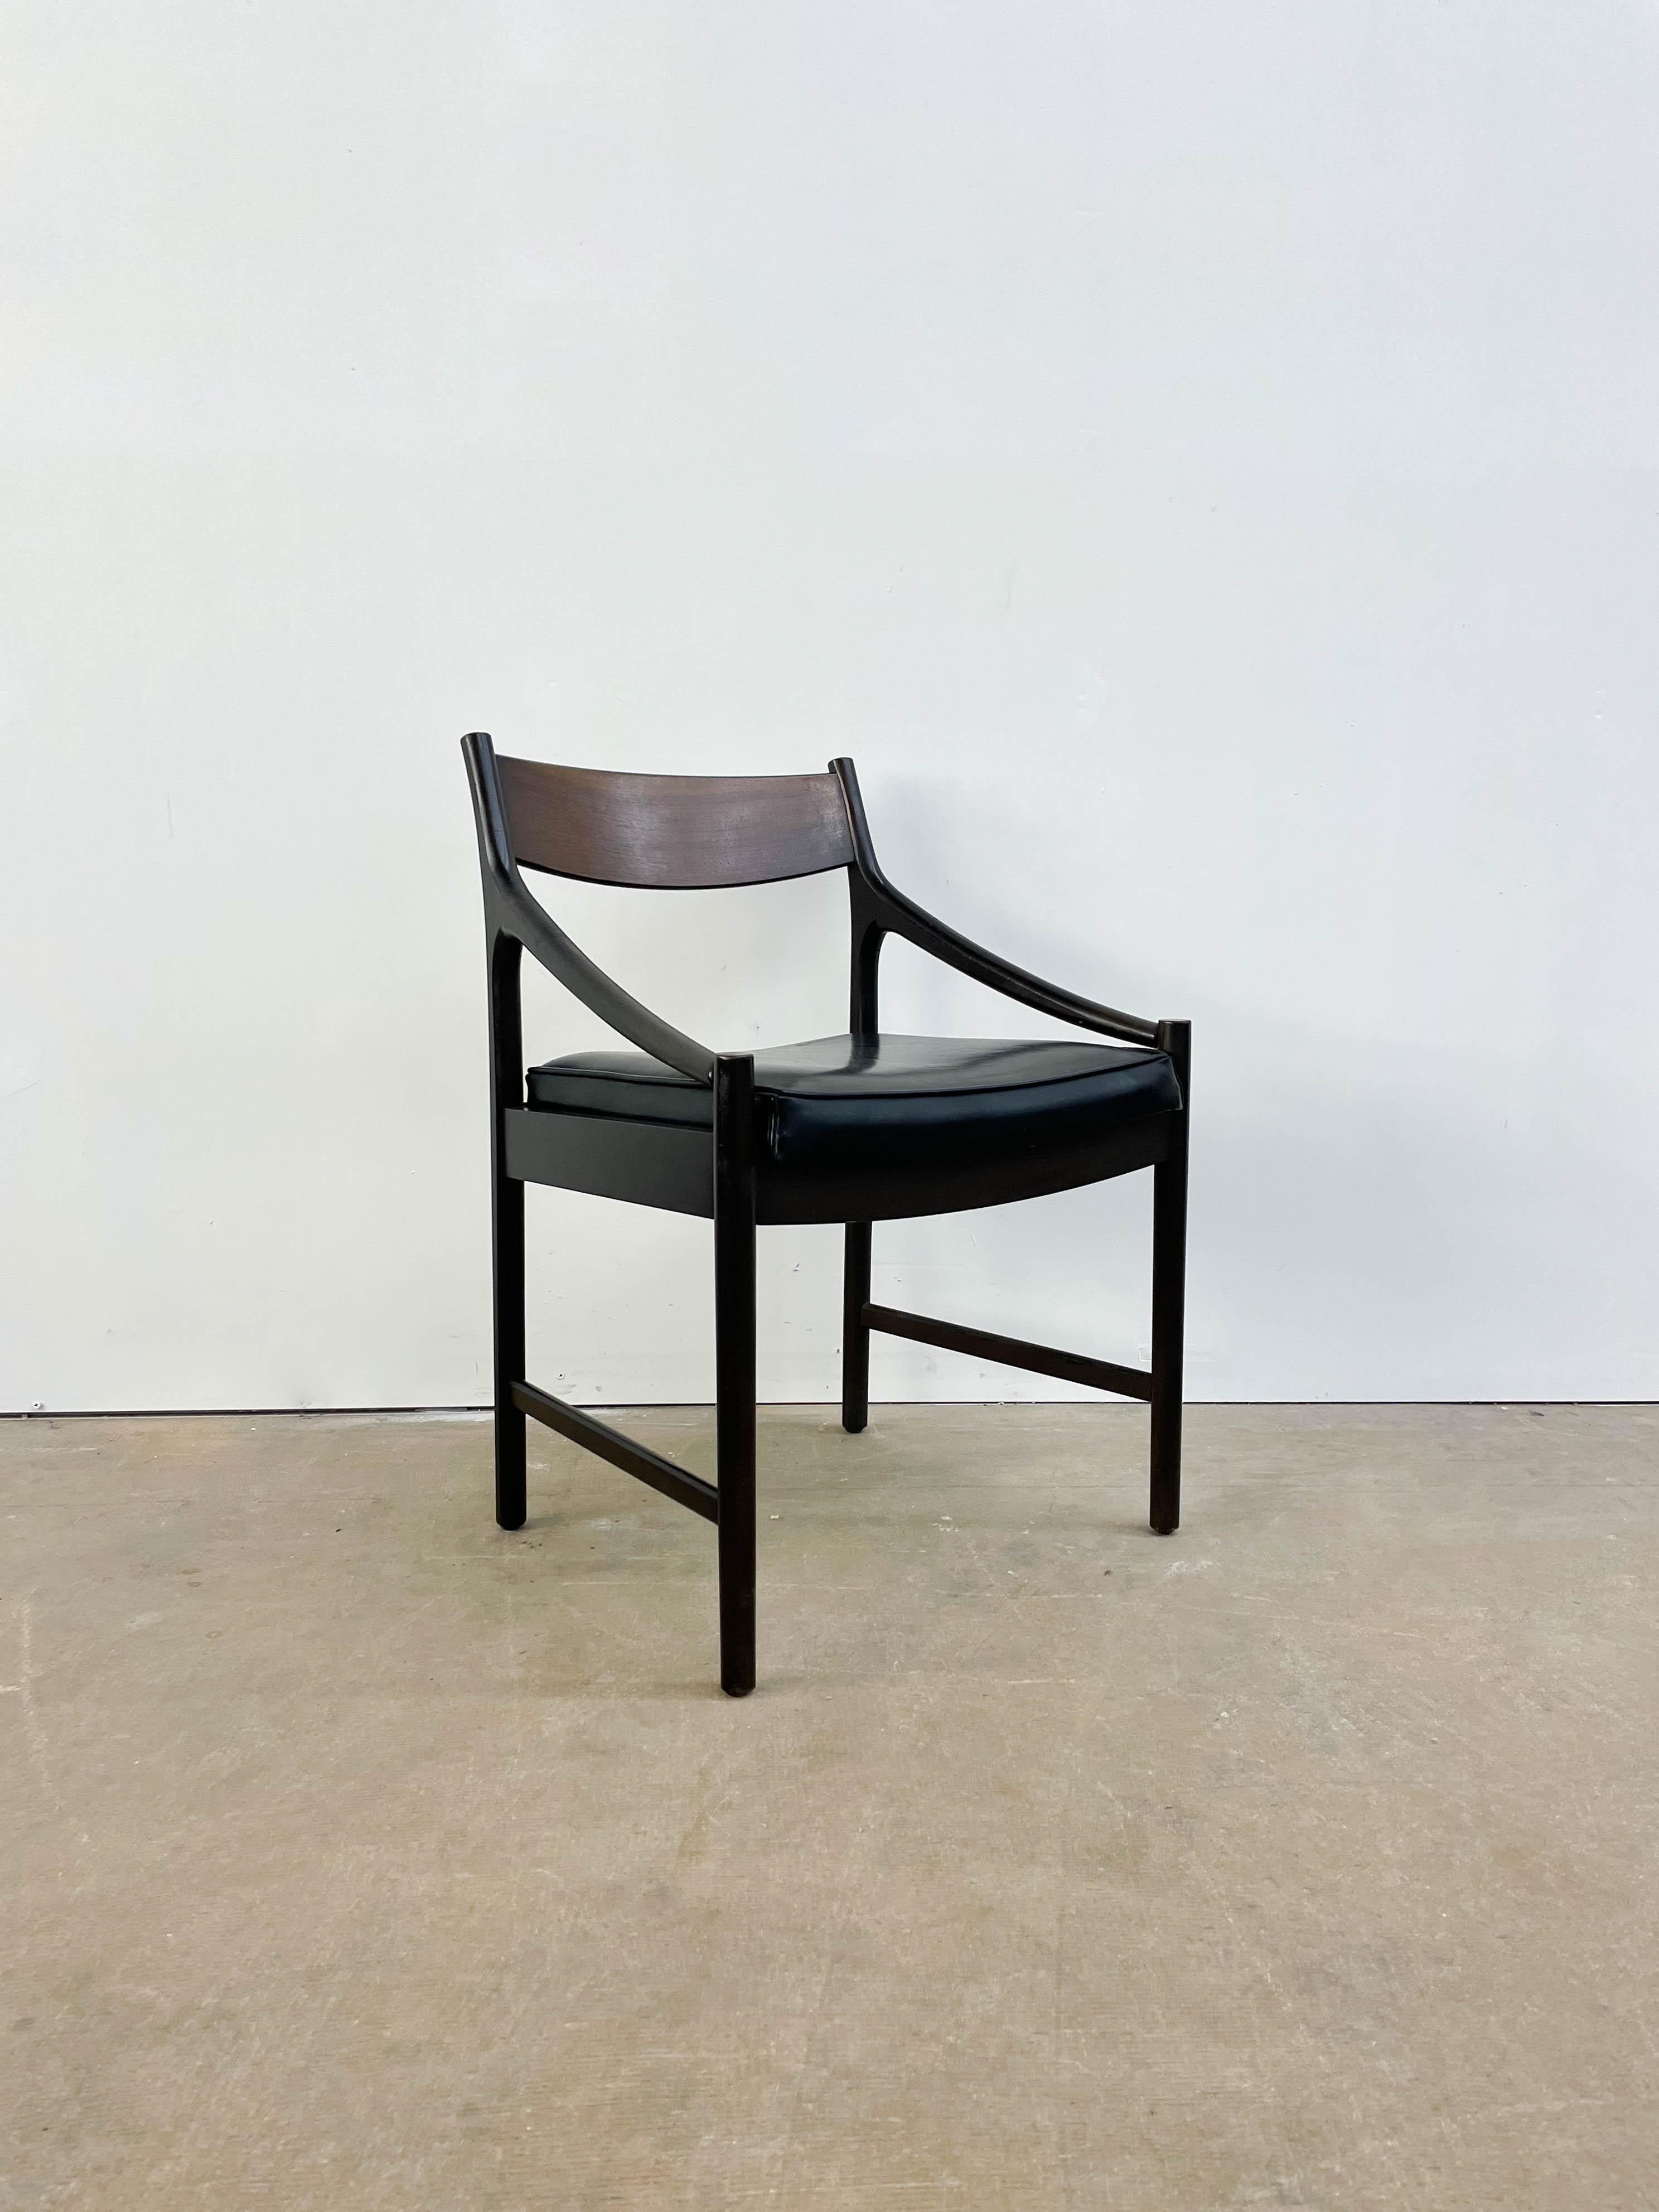 Hervorragender und seltener Sessel von Michael Van Beuren für seine Firma, hergestellt in Mexiko in den 1960er Jahren. Der schöne Stuhl bietet eine schöne Kombination von Hölzern mit einer atemberaubenden Teakholz-Rückenlehne - dies ist kein Stuhl,